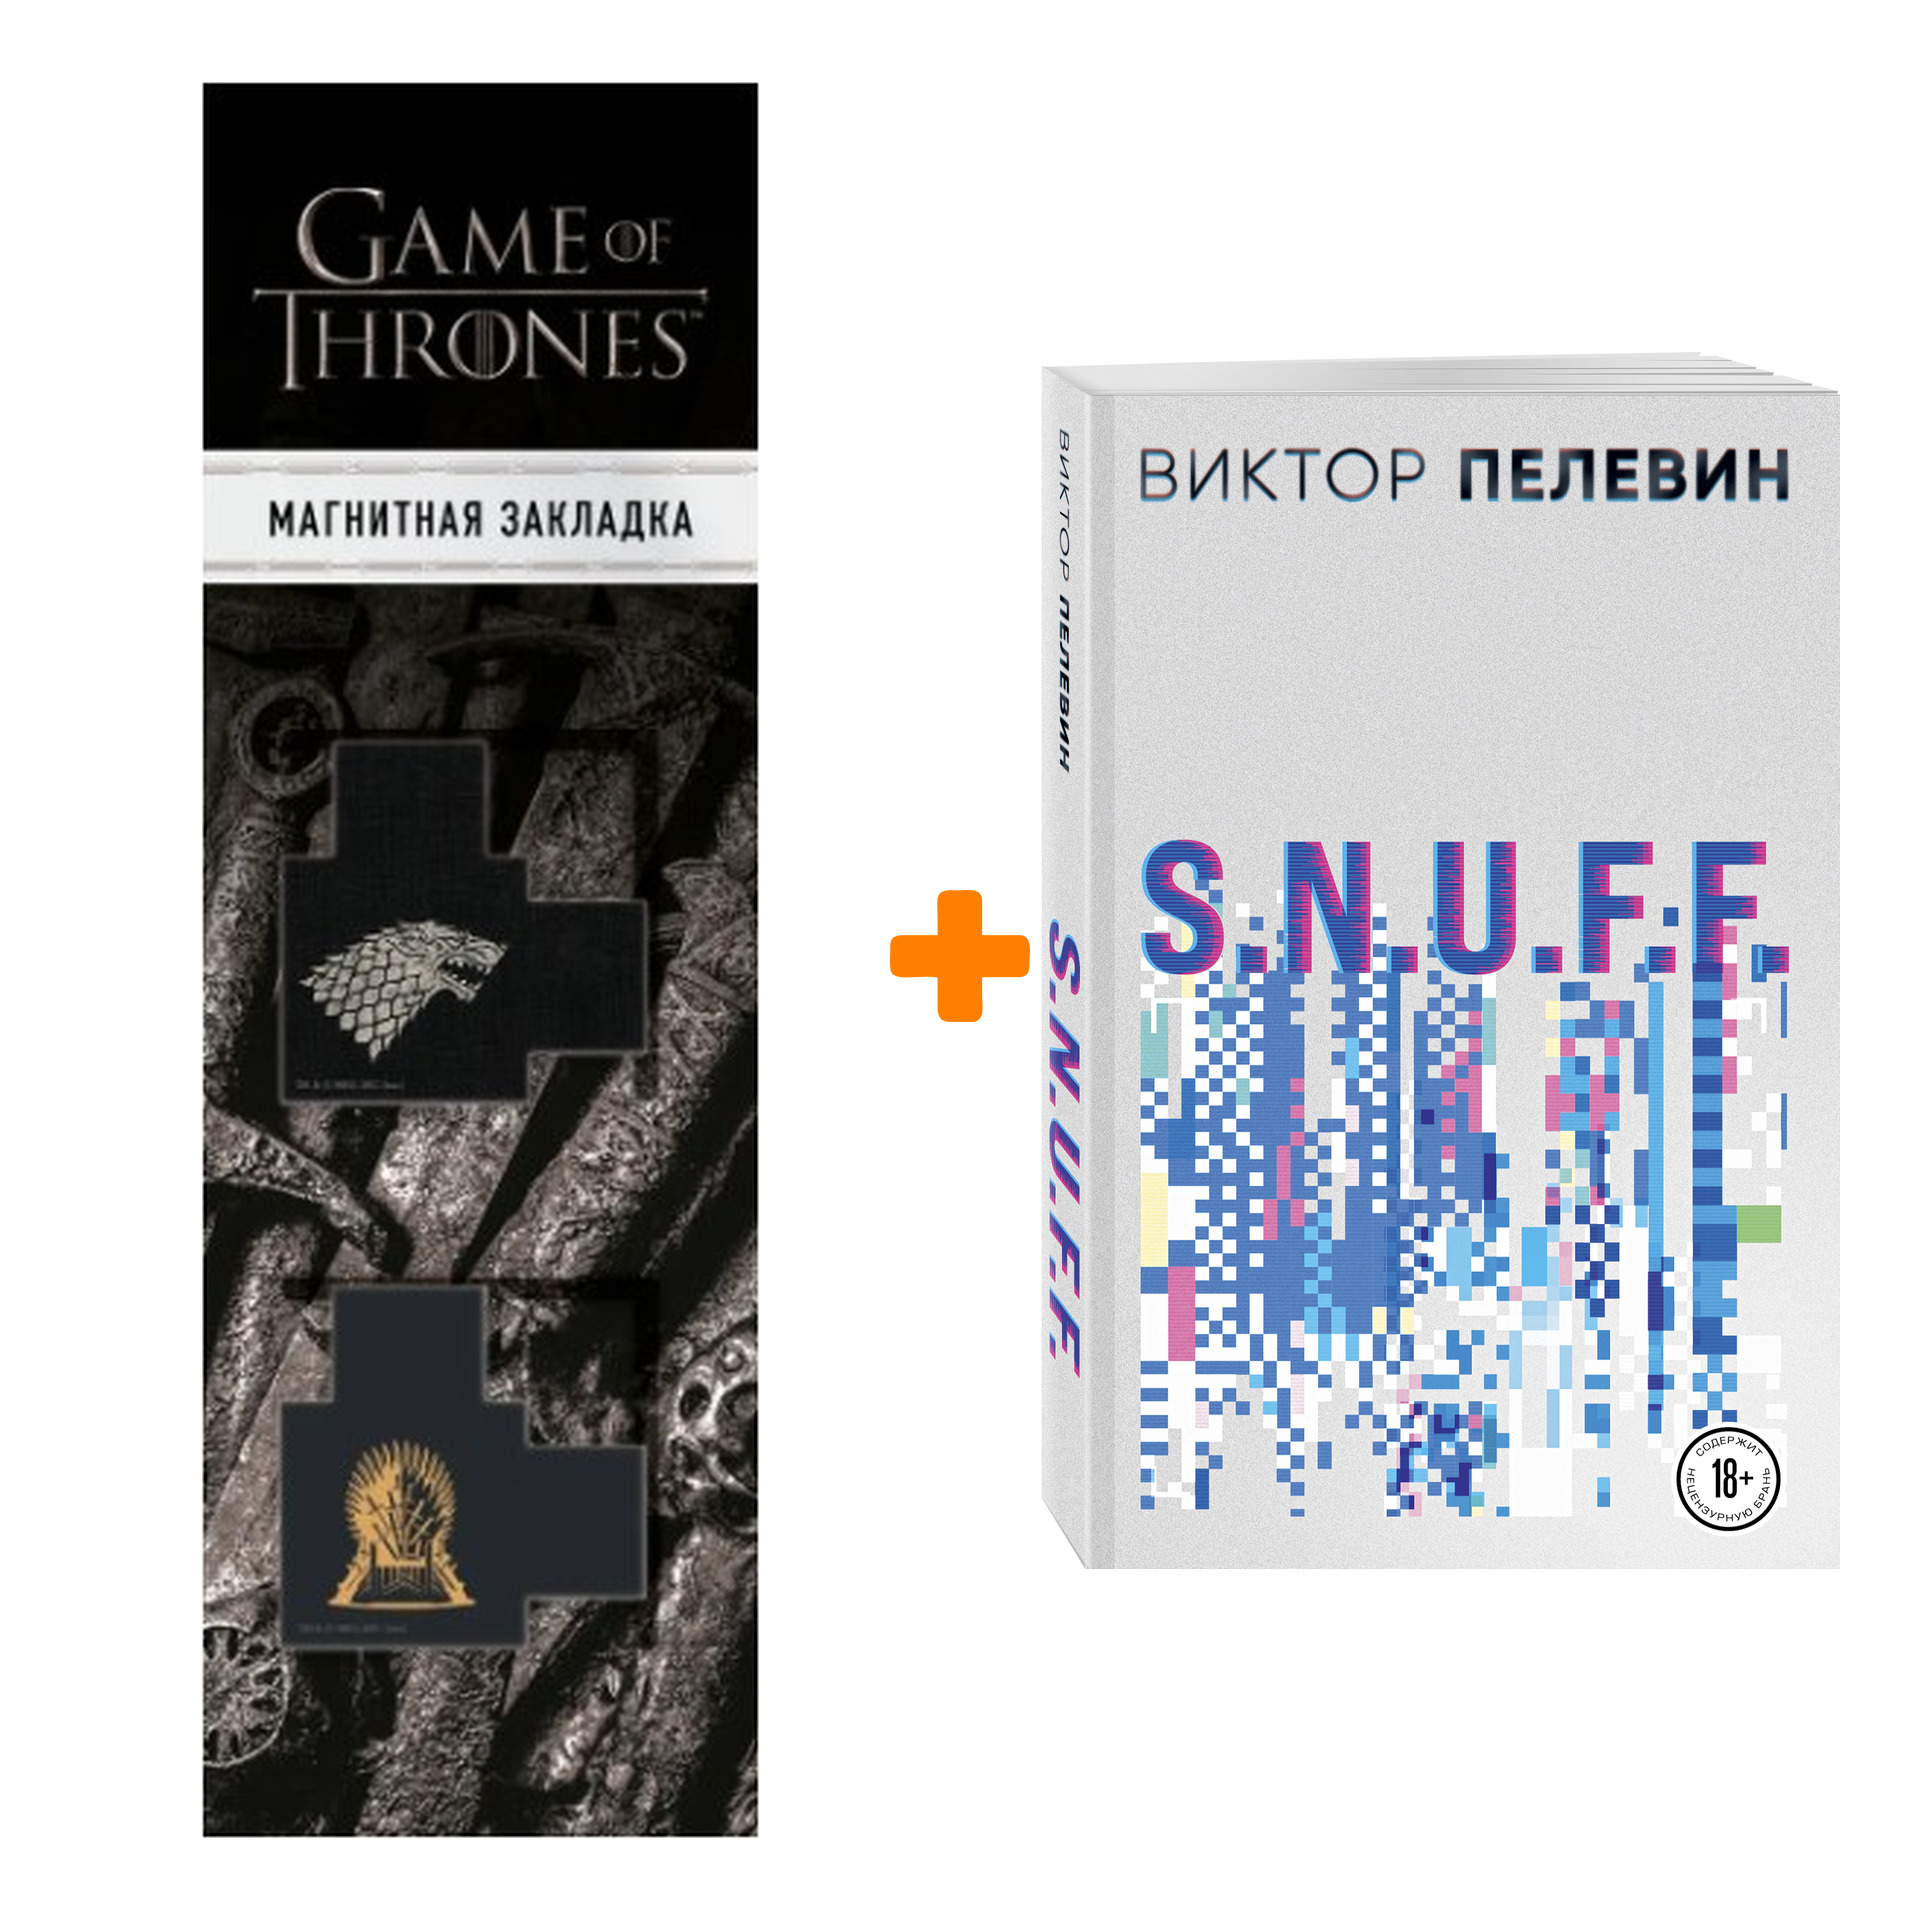 

Набор S.N.U.F.F. Виктор Пелевин + Закладка Game Of Thrones Трон и Герб Старков магнитная 2-Pack